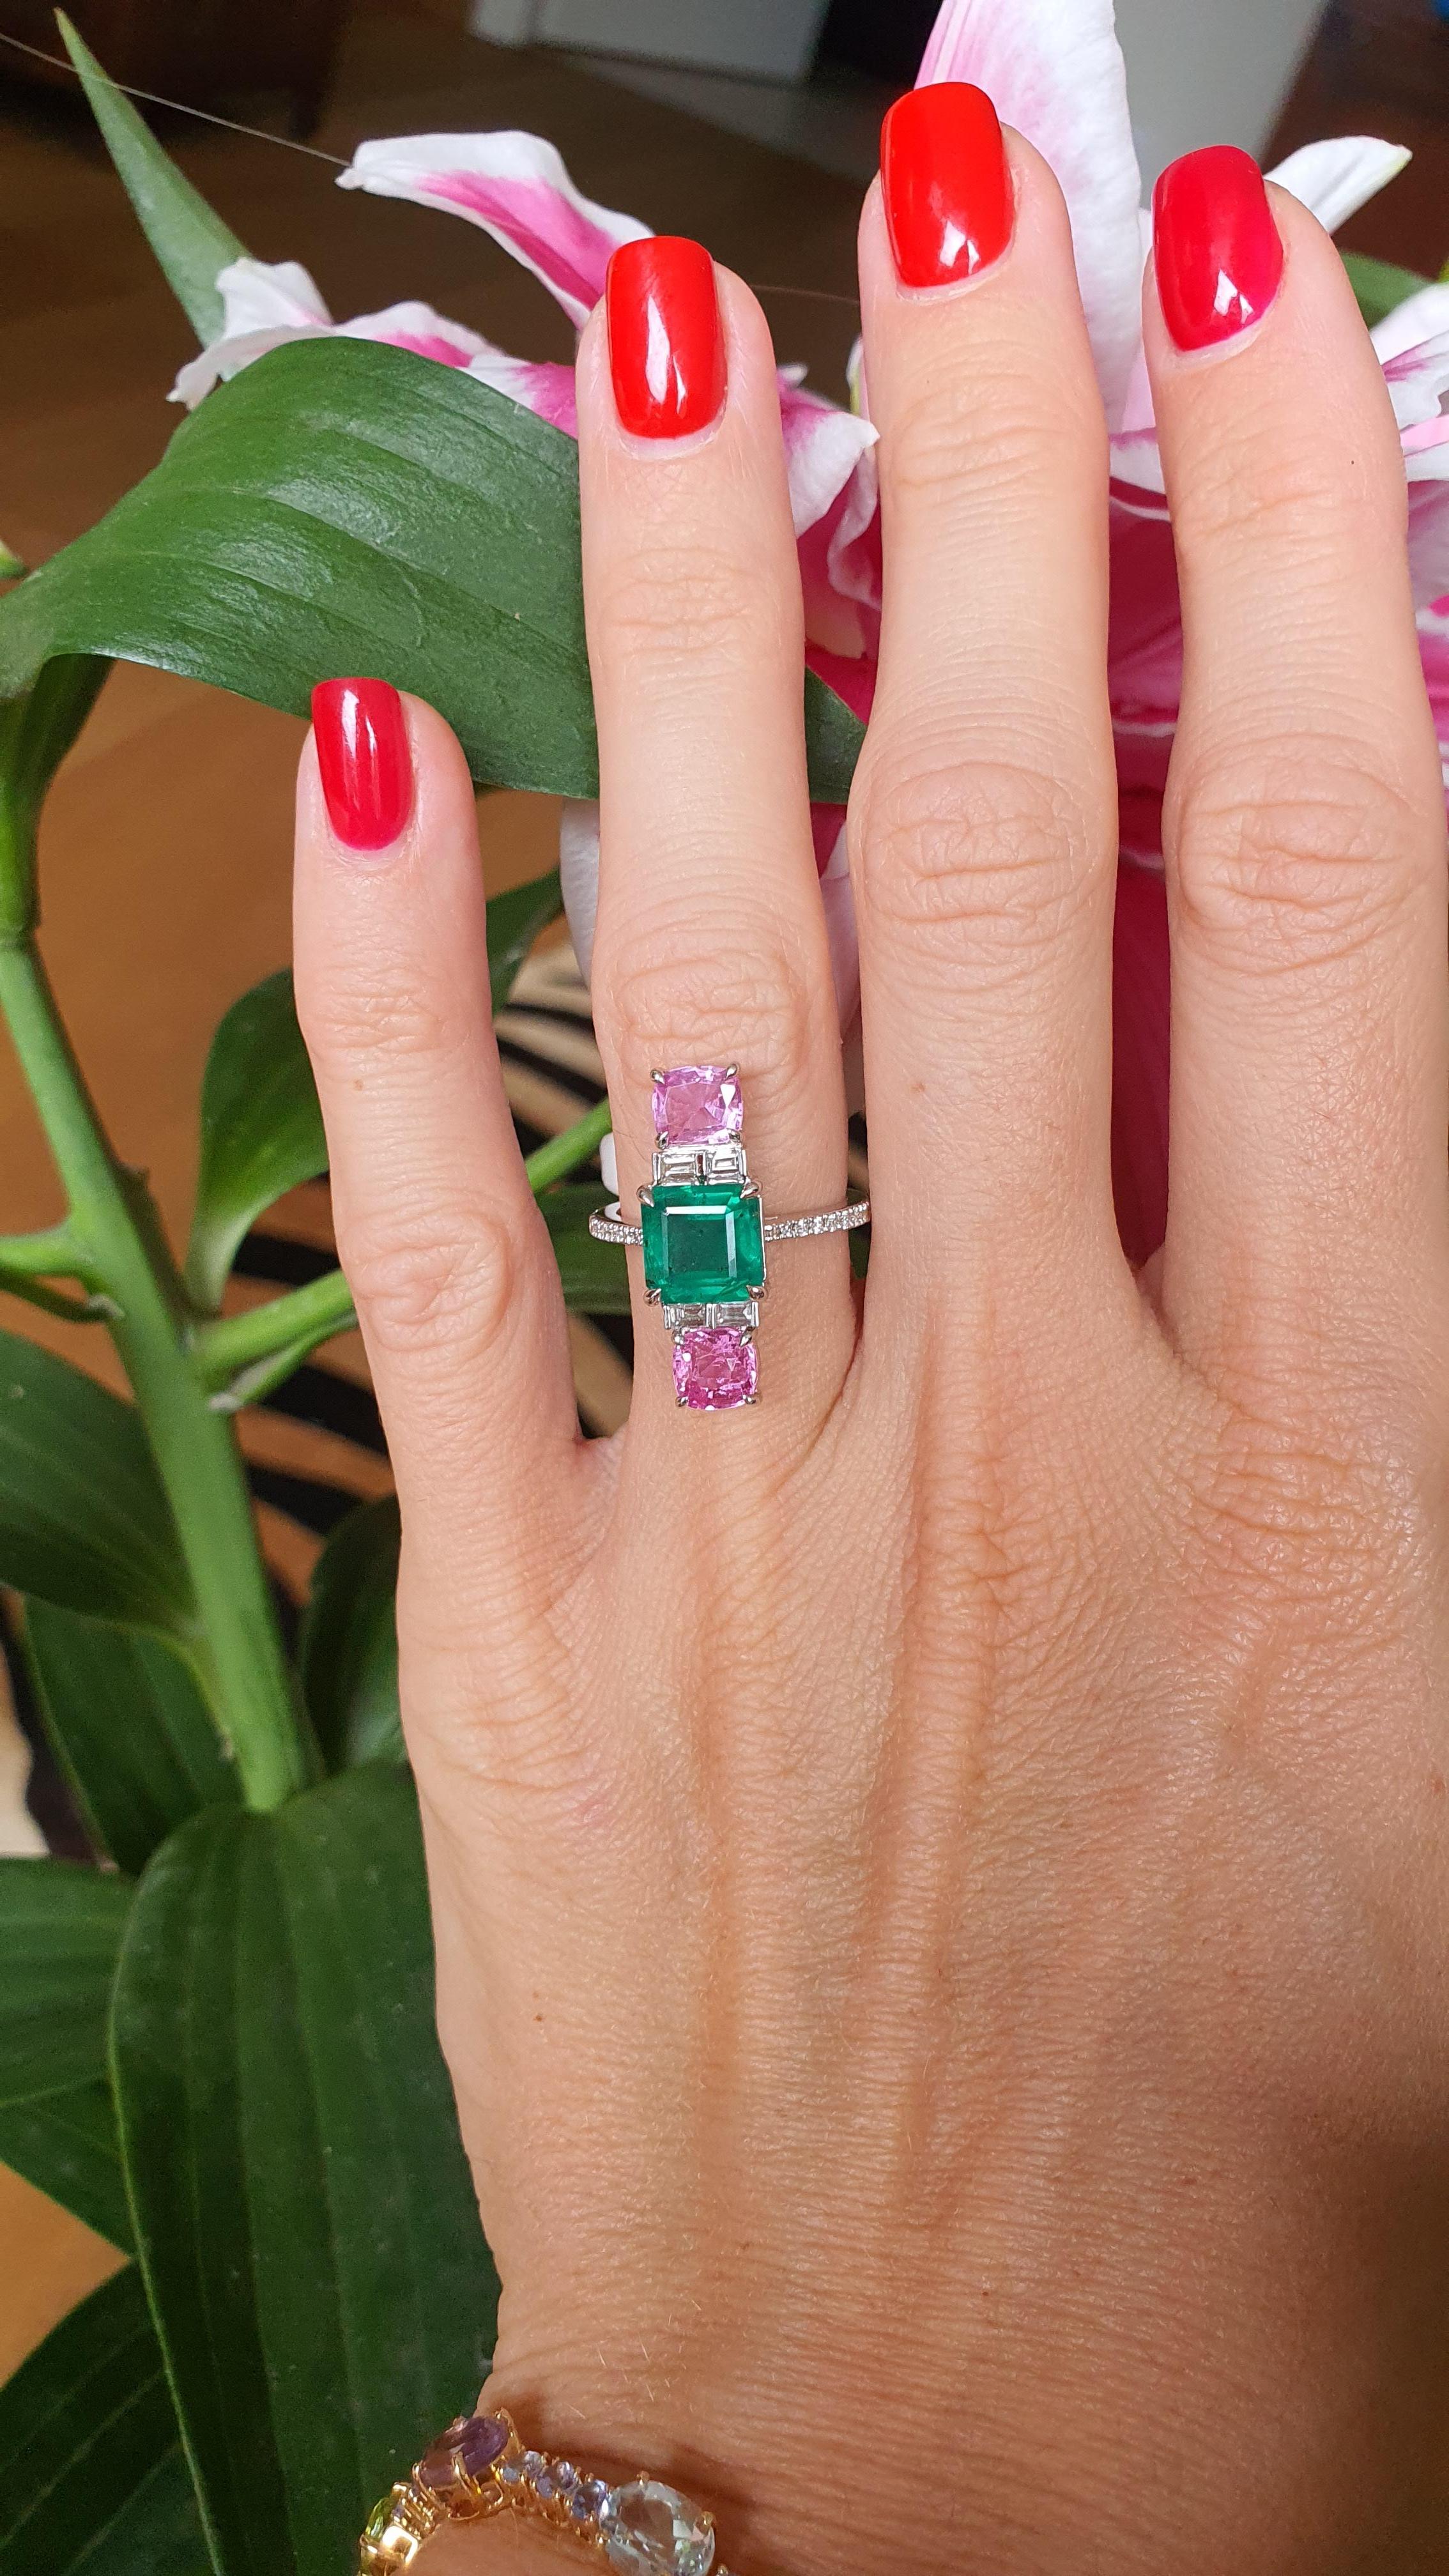 
Atemberaubender mehrreihiger Ring mit zwei wunderschönen rosa Saphiren im Kissenschliff und einem beeindruckenden Smaragd von 2,09 Karat in einer zeitlosen Kombination aus 18 K Weißgold mit runden Diamanten. Die unbestreitbare Schönheit dieses